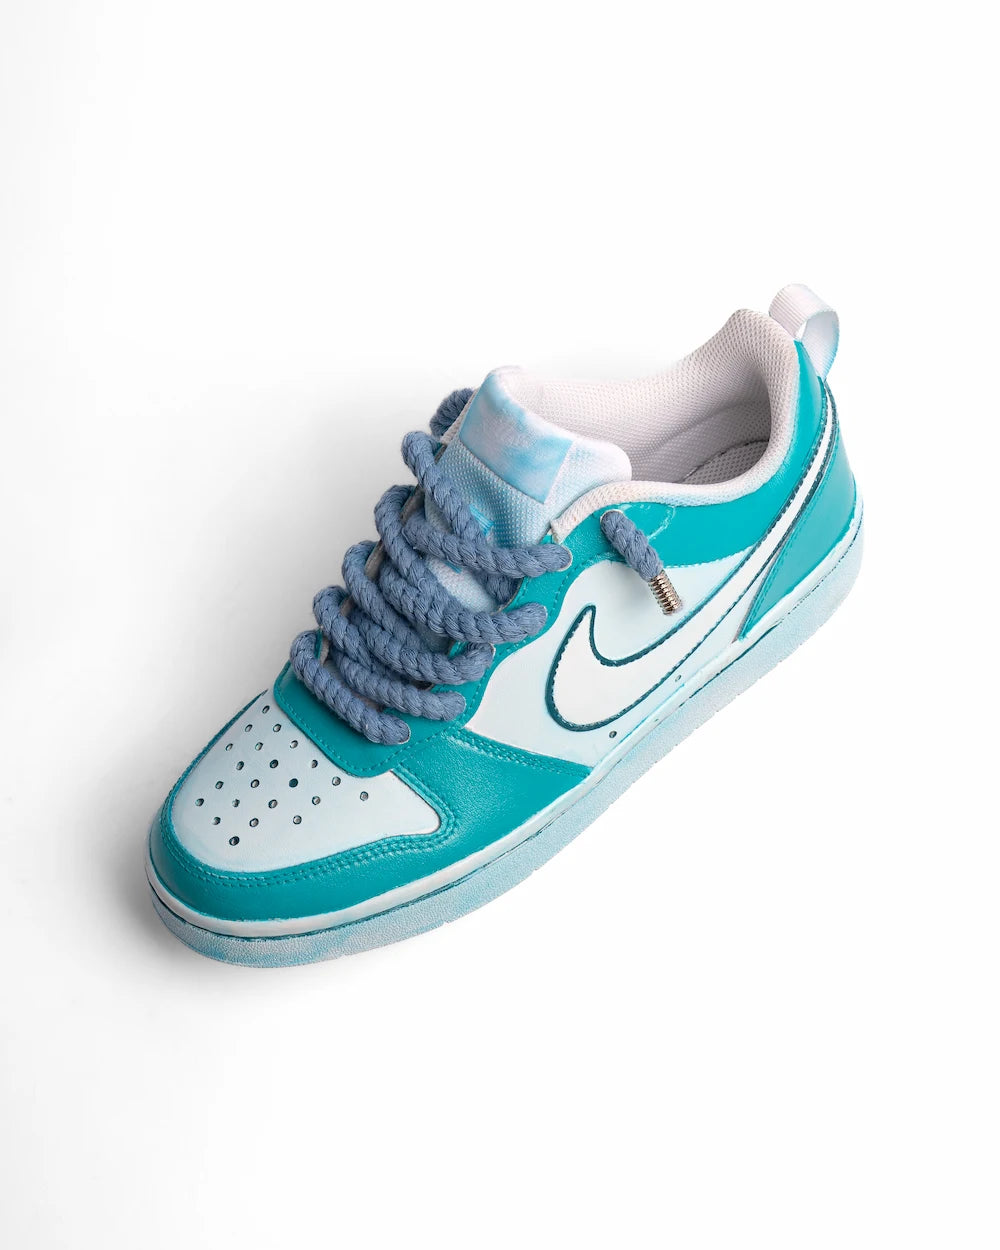 Nike Court Borough personalizzata con tintura in due tonalità di azzurro e lacci in corda blu